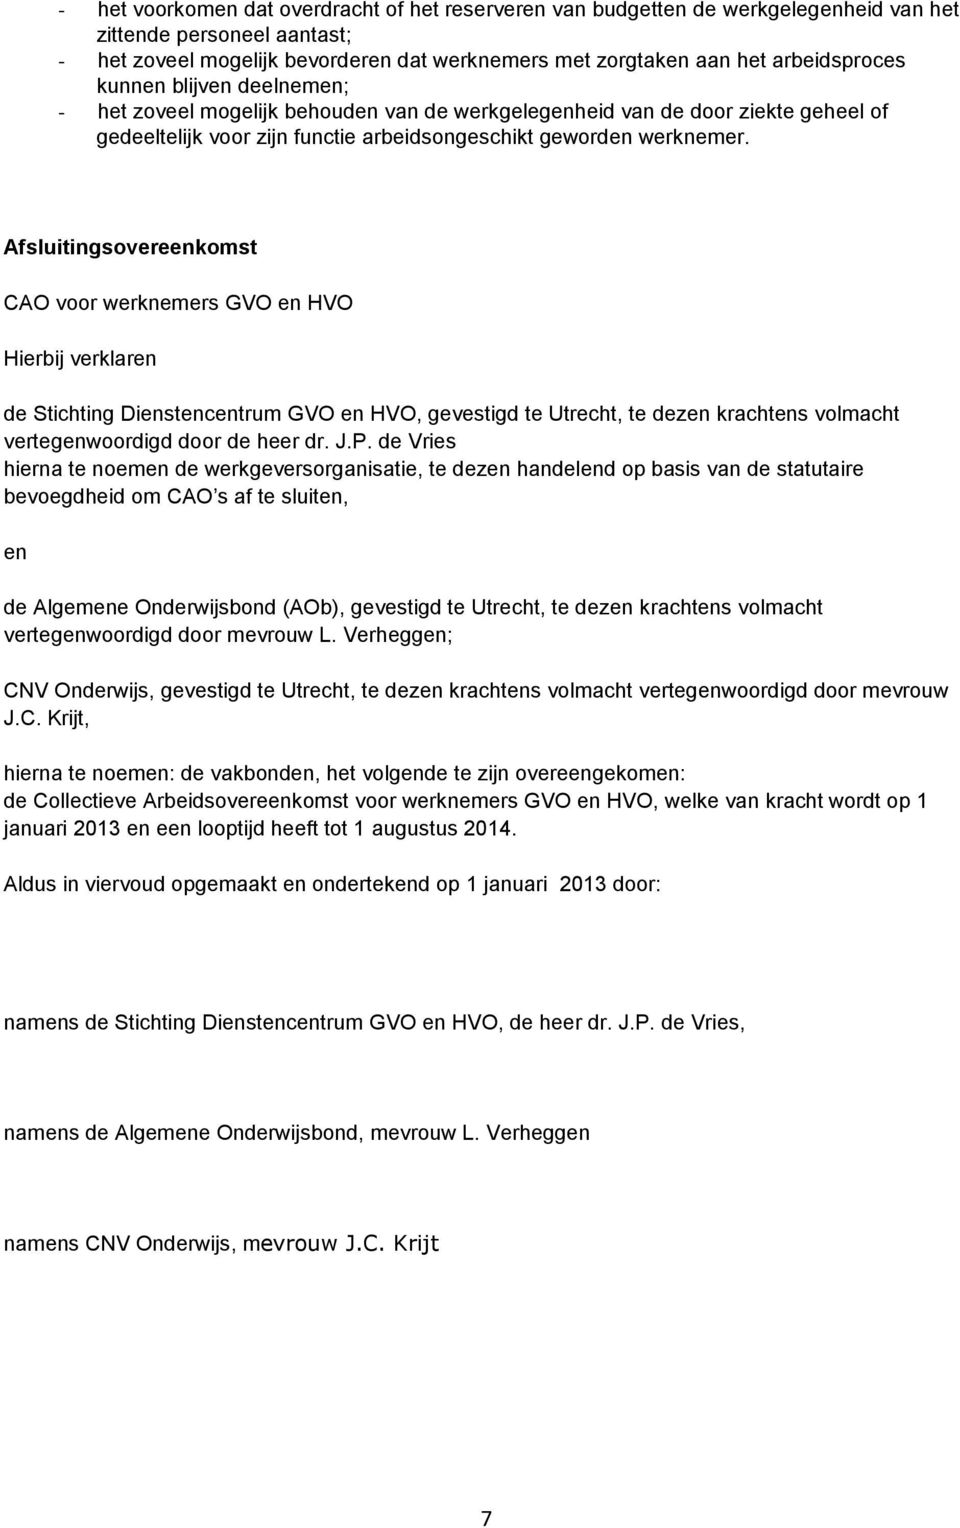 Afsluitingsovereenkomst CAO voor werknemers GVO en HVO Hierbij verklaren de Stichting Dienstencentrum GVO en HVO, gevestigd te Utrecht, te dezen krachtens volmacht vertegenwoordigd door de heer dr. J.